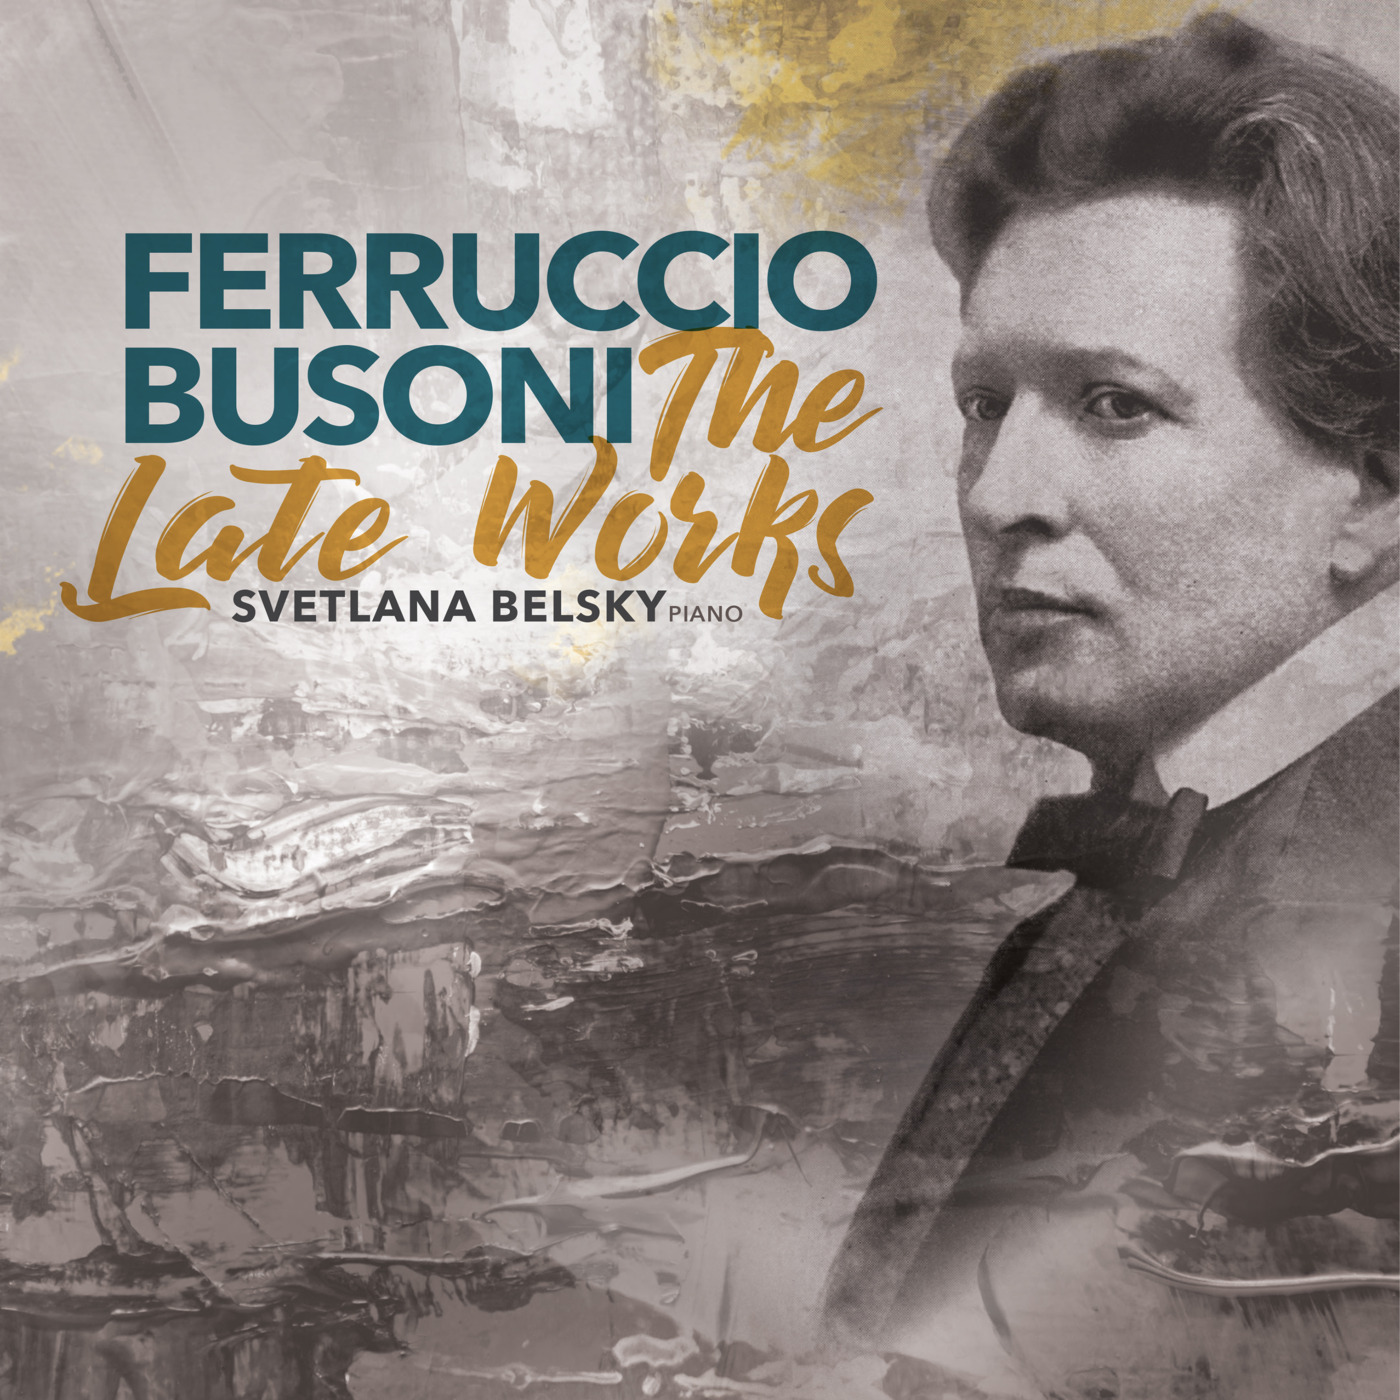 Episode 138: 15138 Ferruccio Busoni: The Late Works